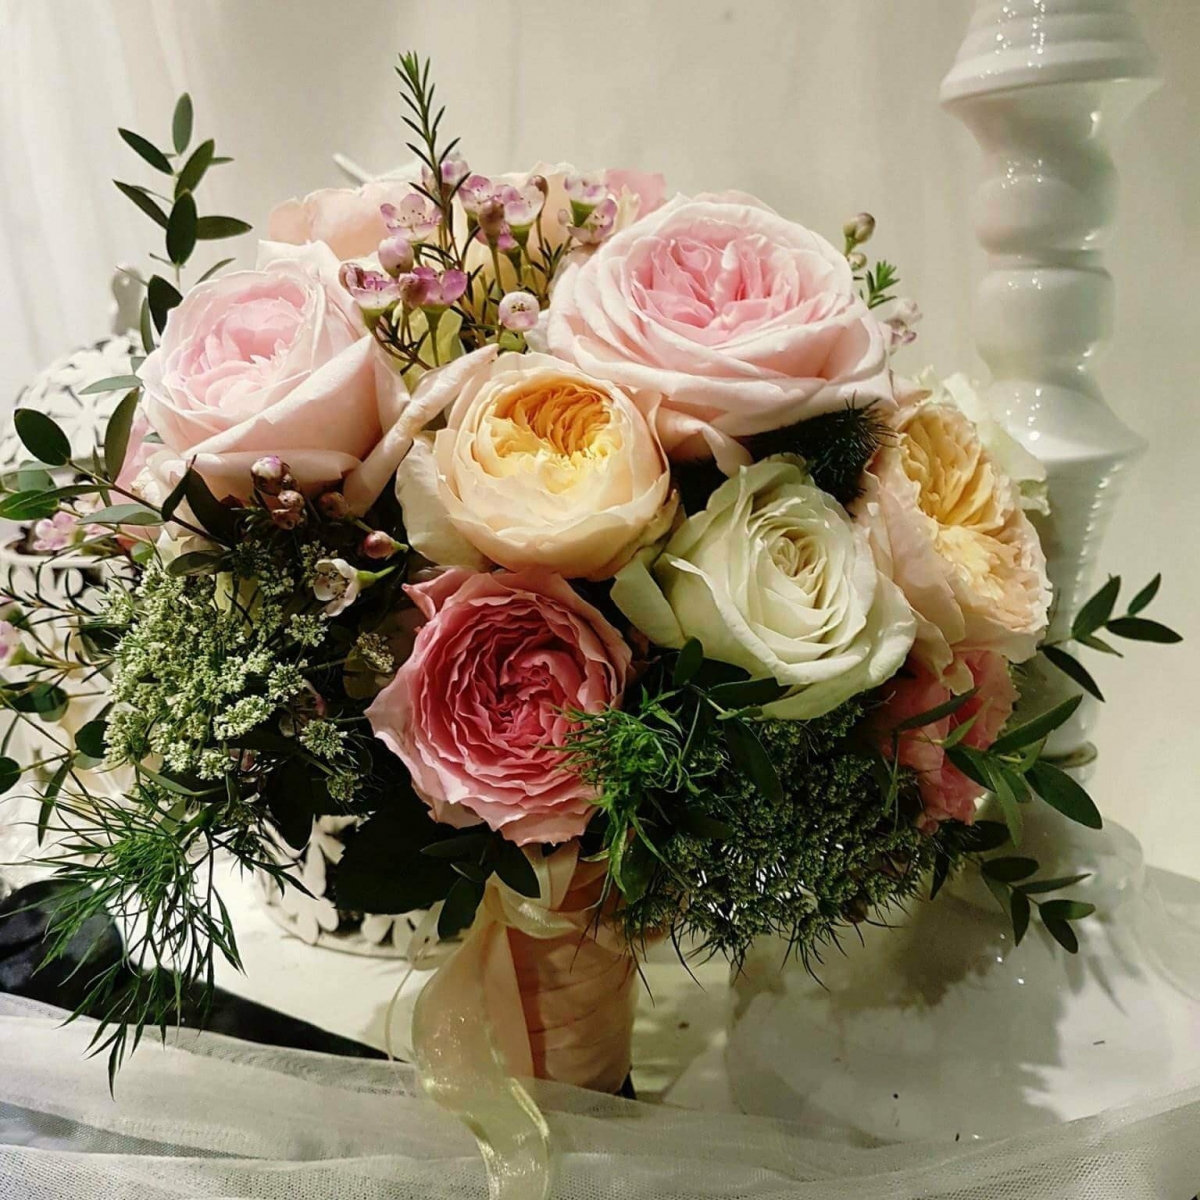 Tổng hợp các hình ảnh bó hoa cưới mang những thông điệp khác nhau - [Kích thước hình ảnh: 1200x1200 px]